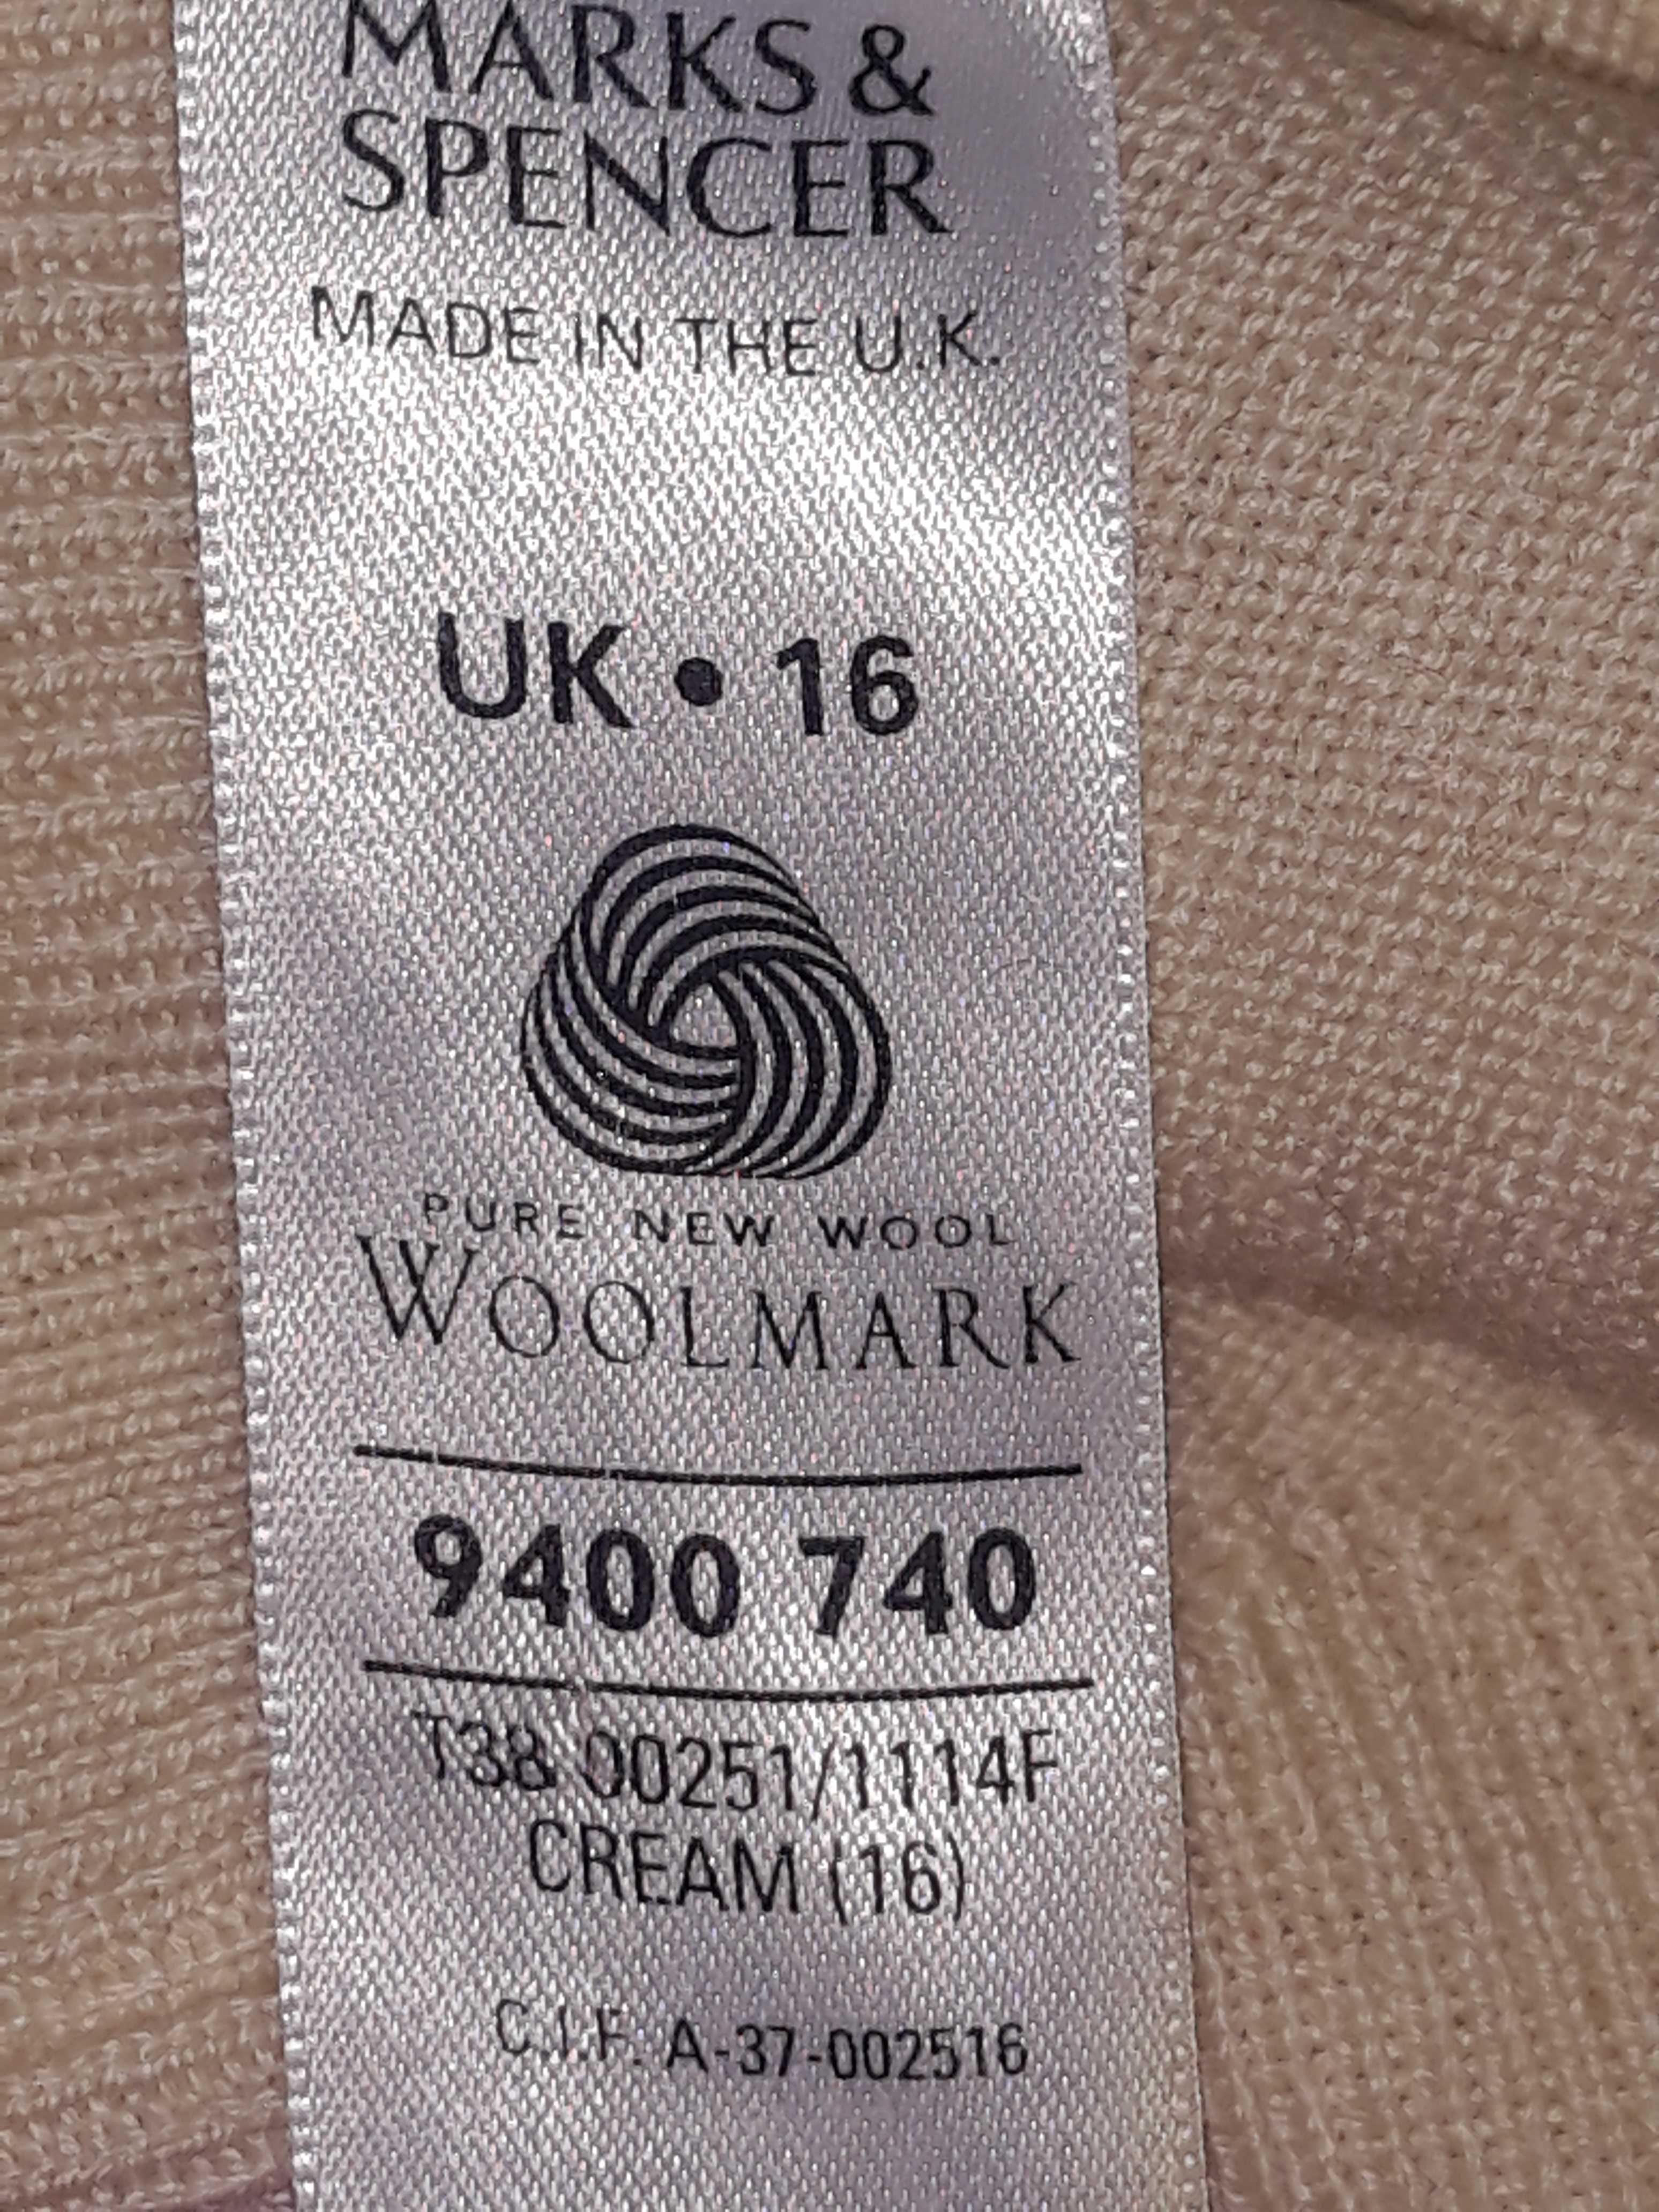 M&S молочный шерстяной свитер pure new wool размер uk16